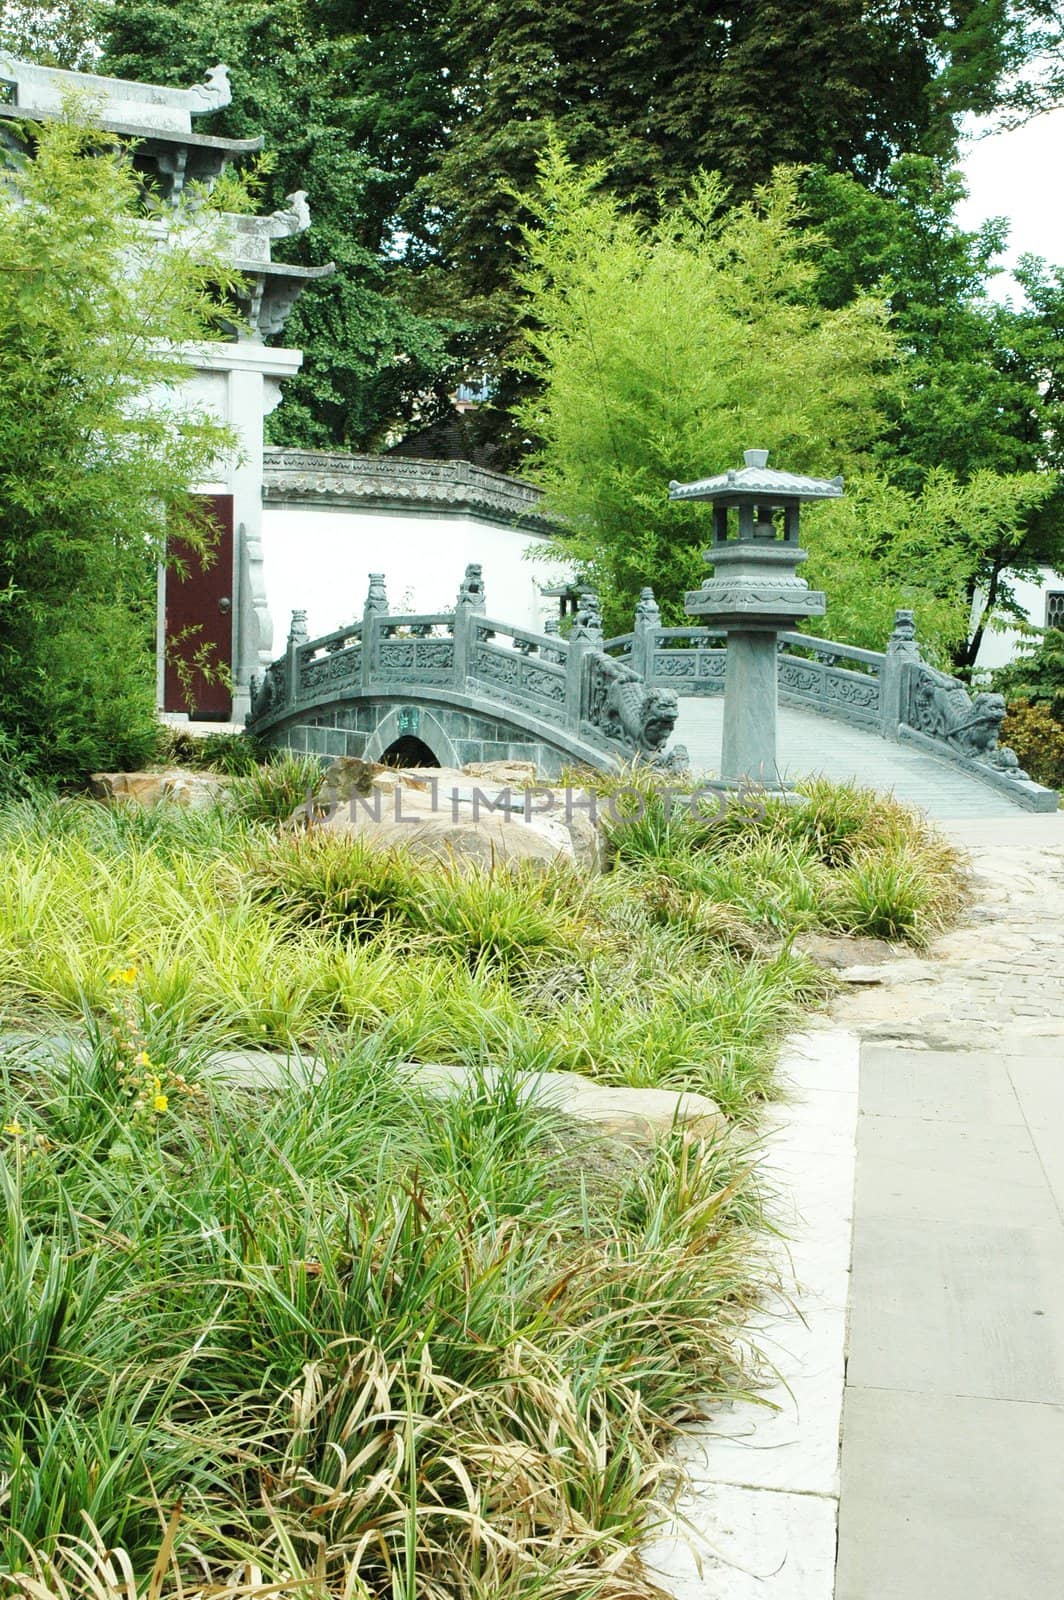 Bridge at Oriental Garden by khwi